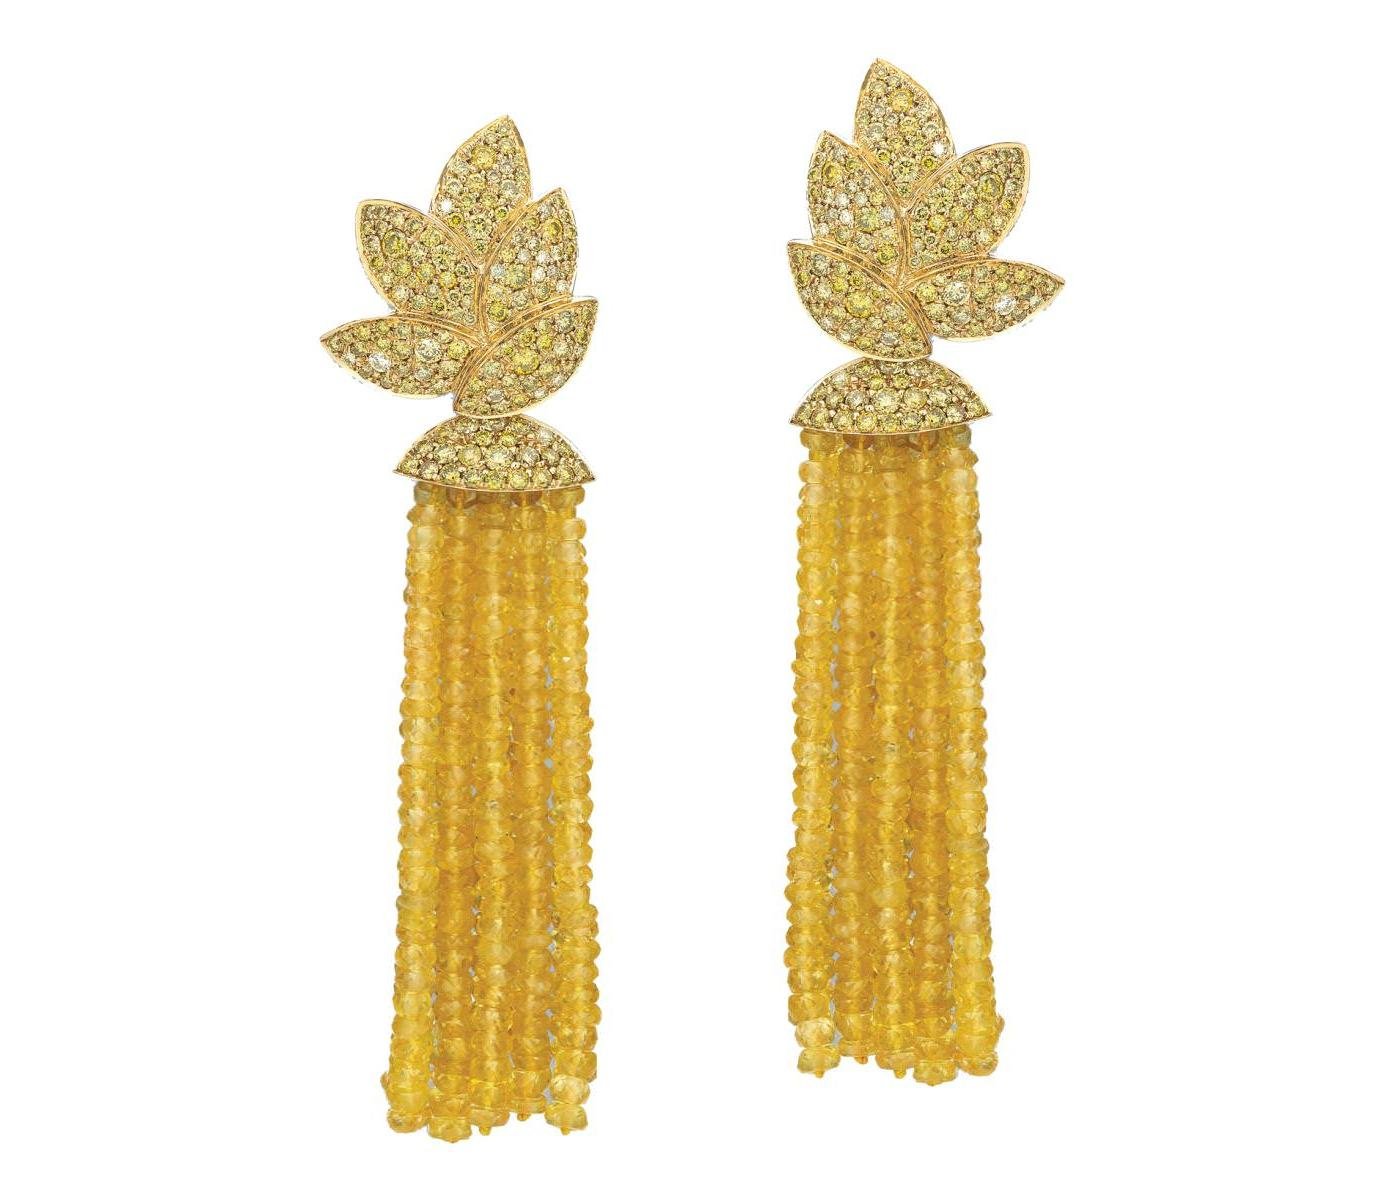 Earrings by Sillam Jewelry